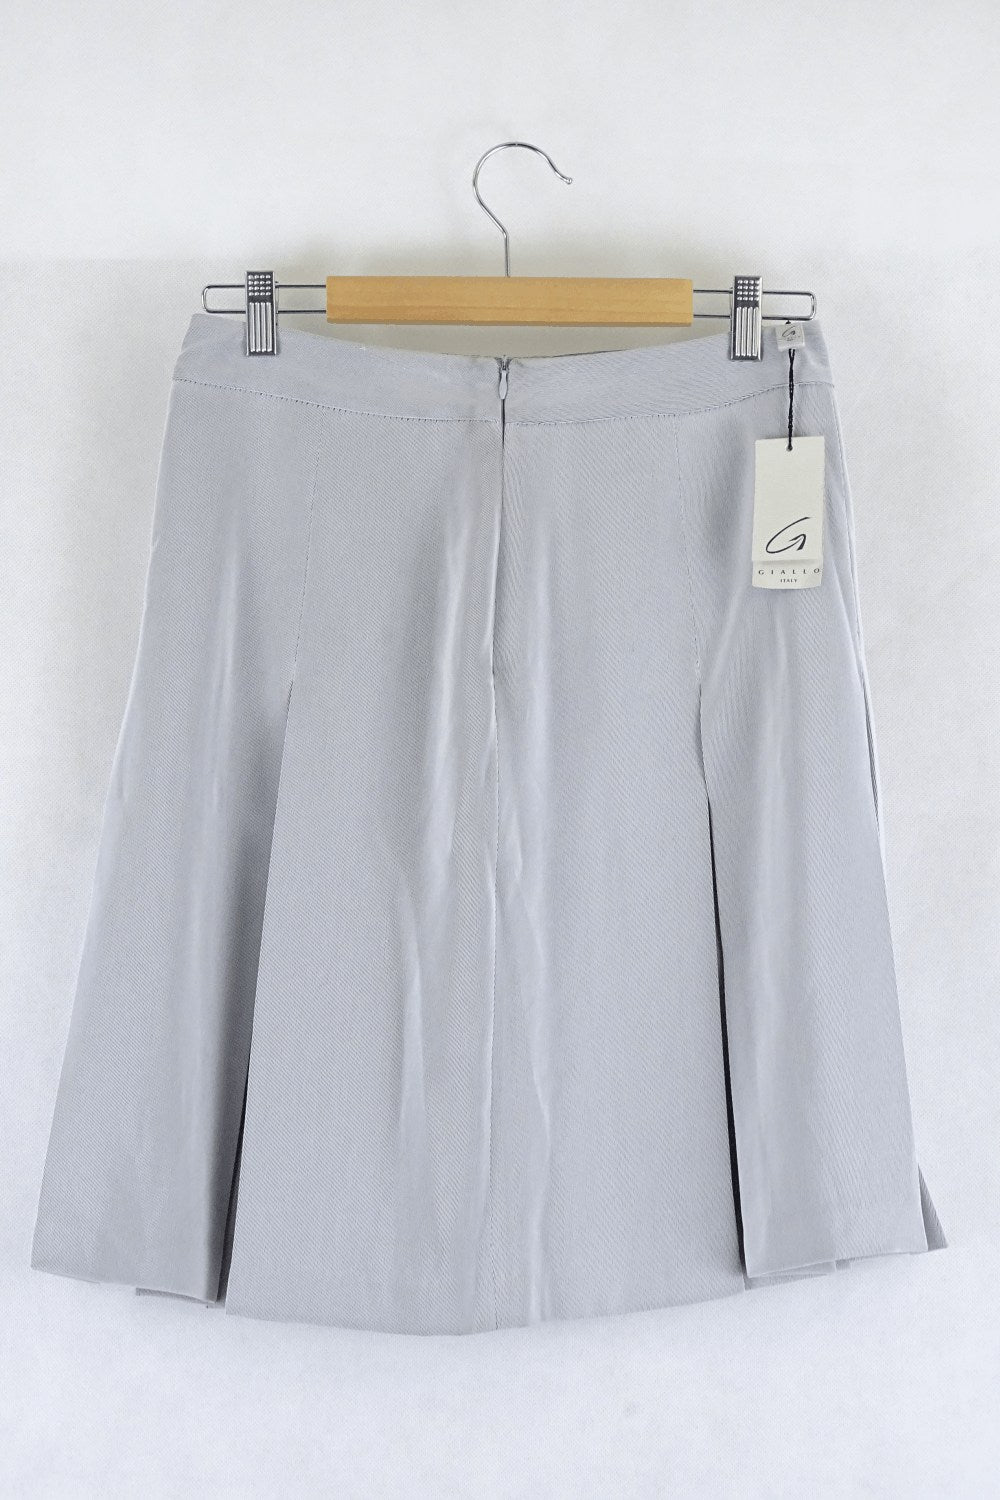 Giallo Italy Grey Skirt 44 (Au 12)